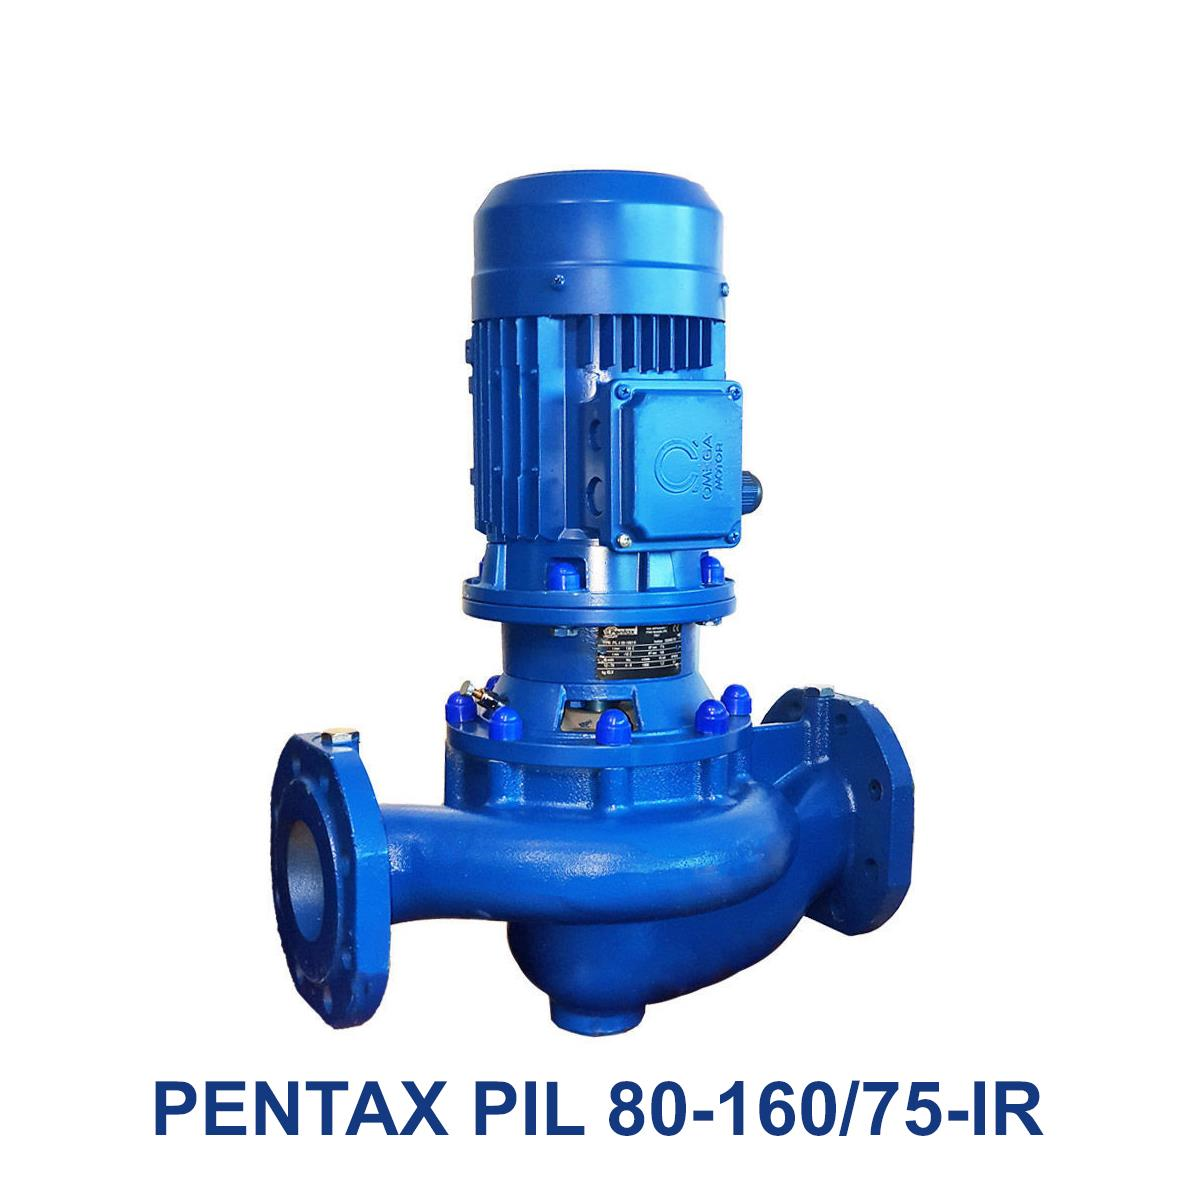 PENTAX-PIL-80-160-75-IR